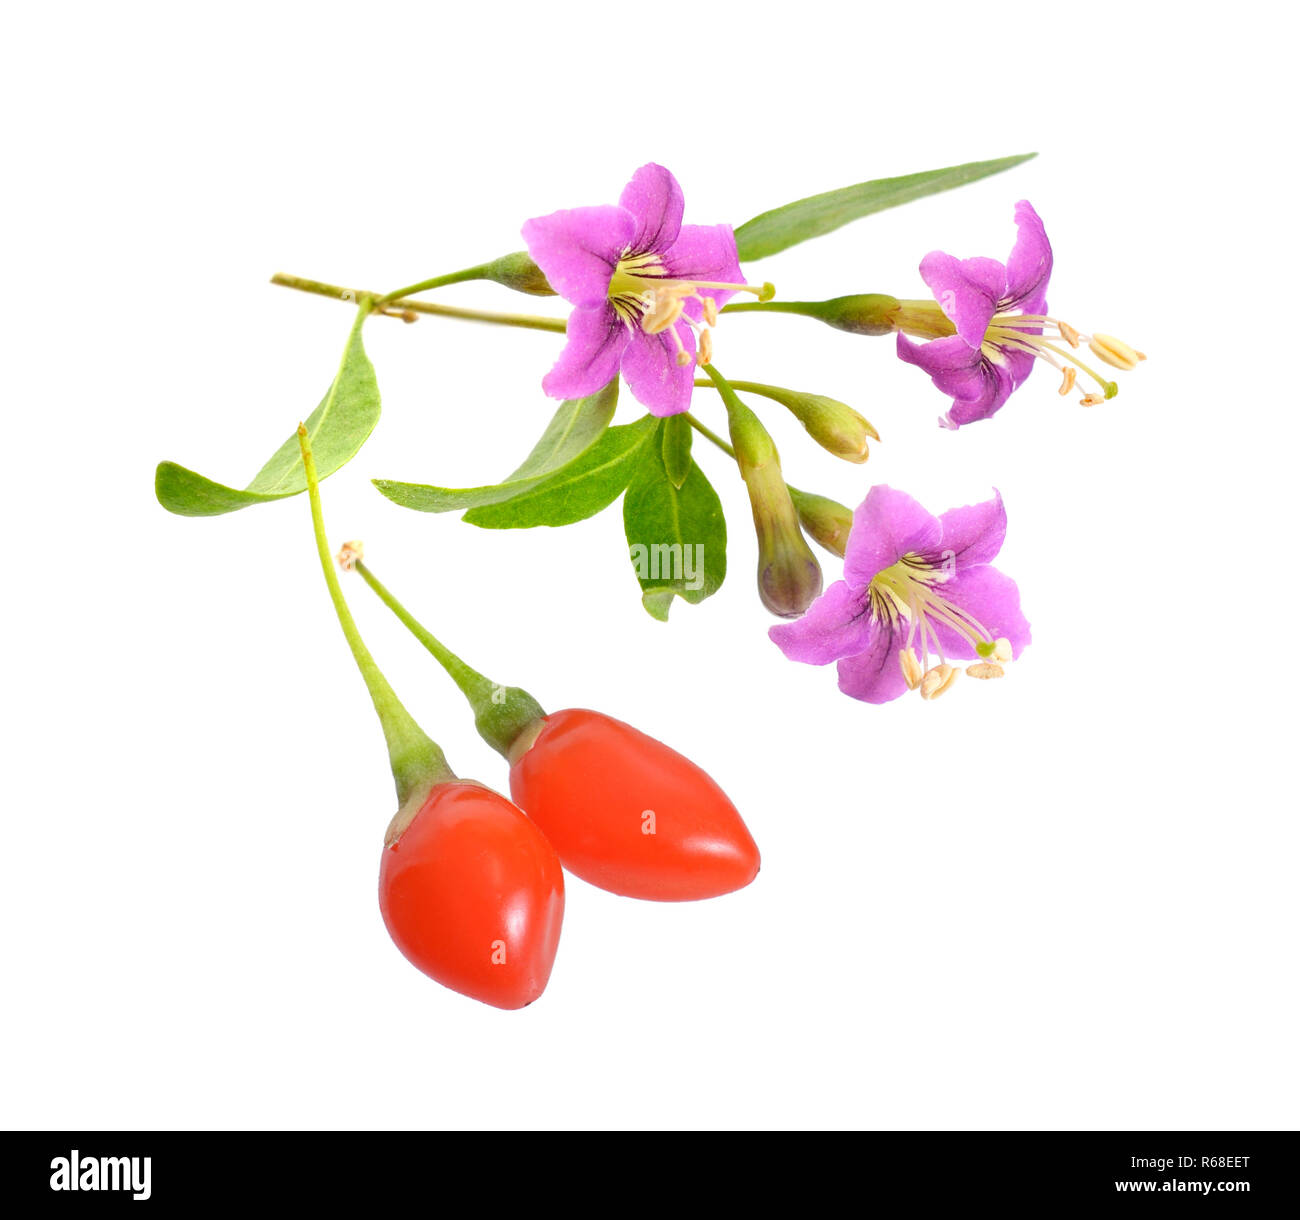 Goji bacche o Lycium barbarum con fiori isolati su sfondo bianco Foto stock  - Alamy